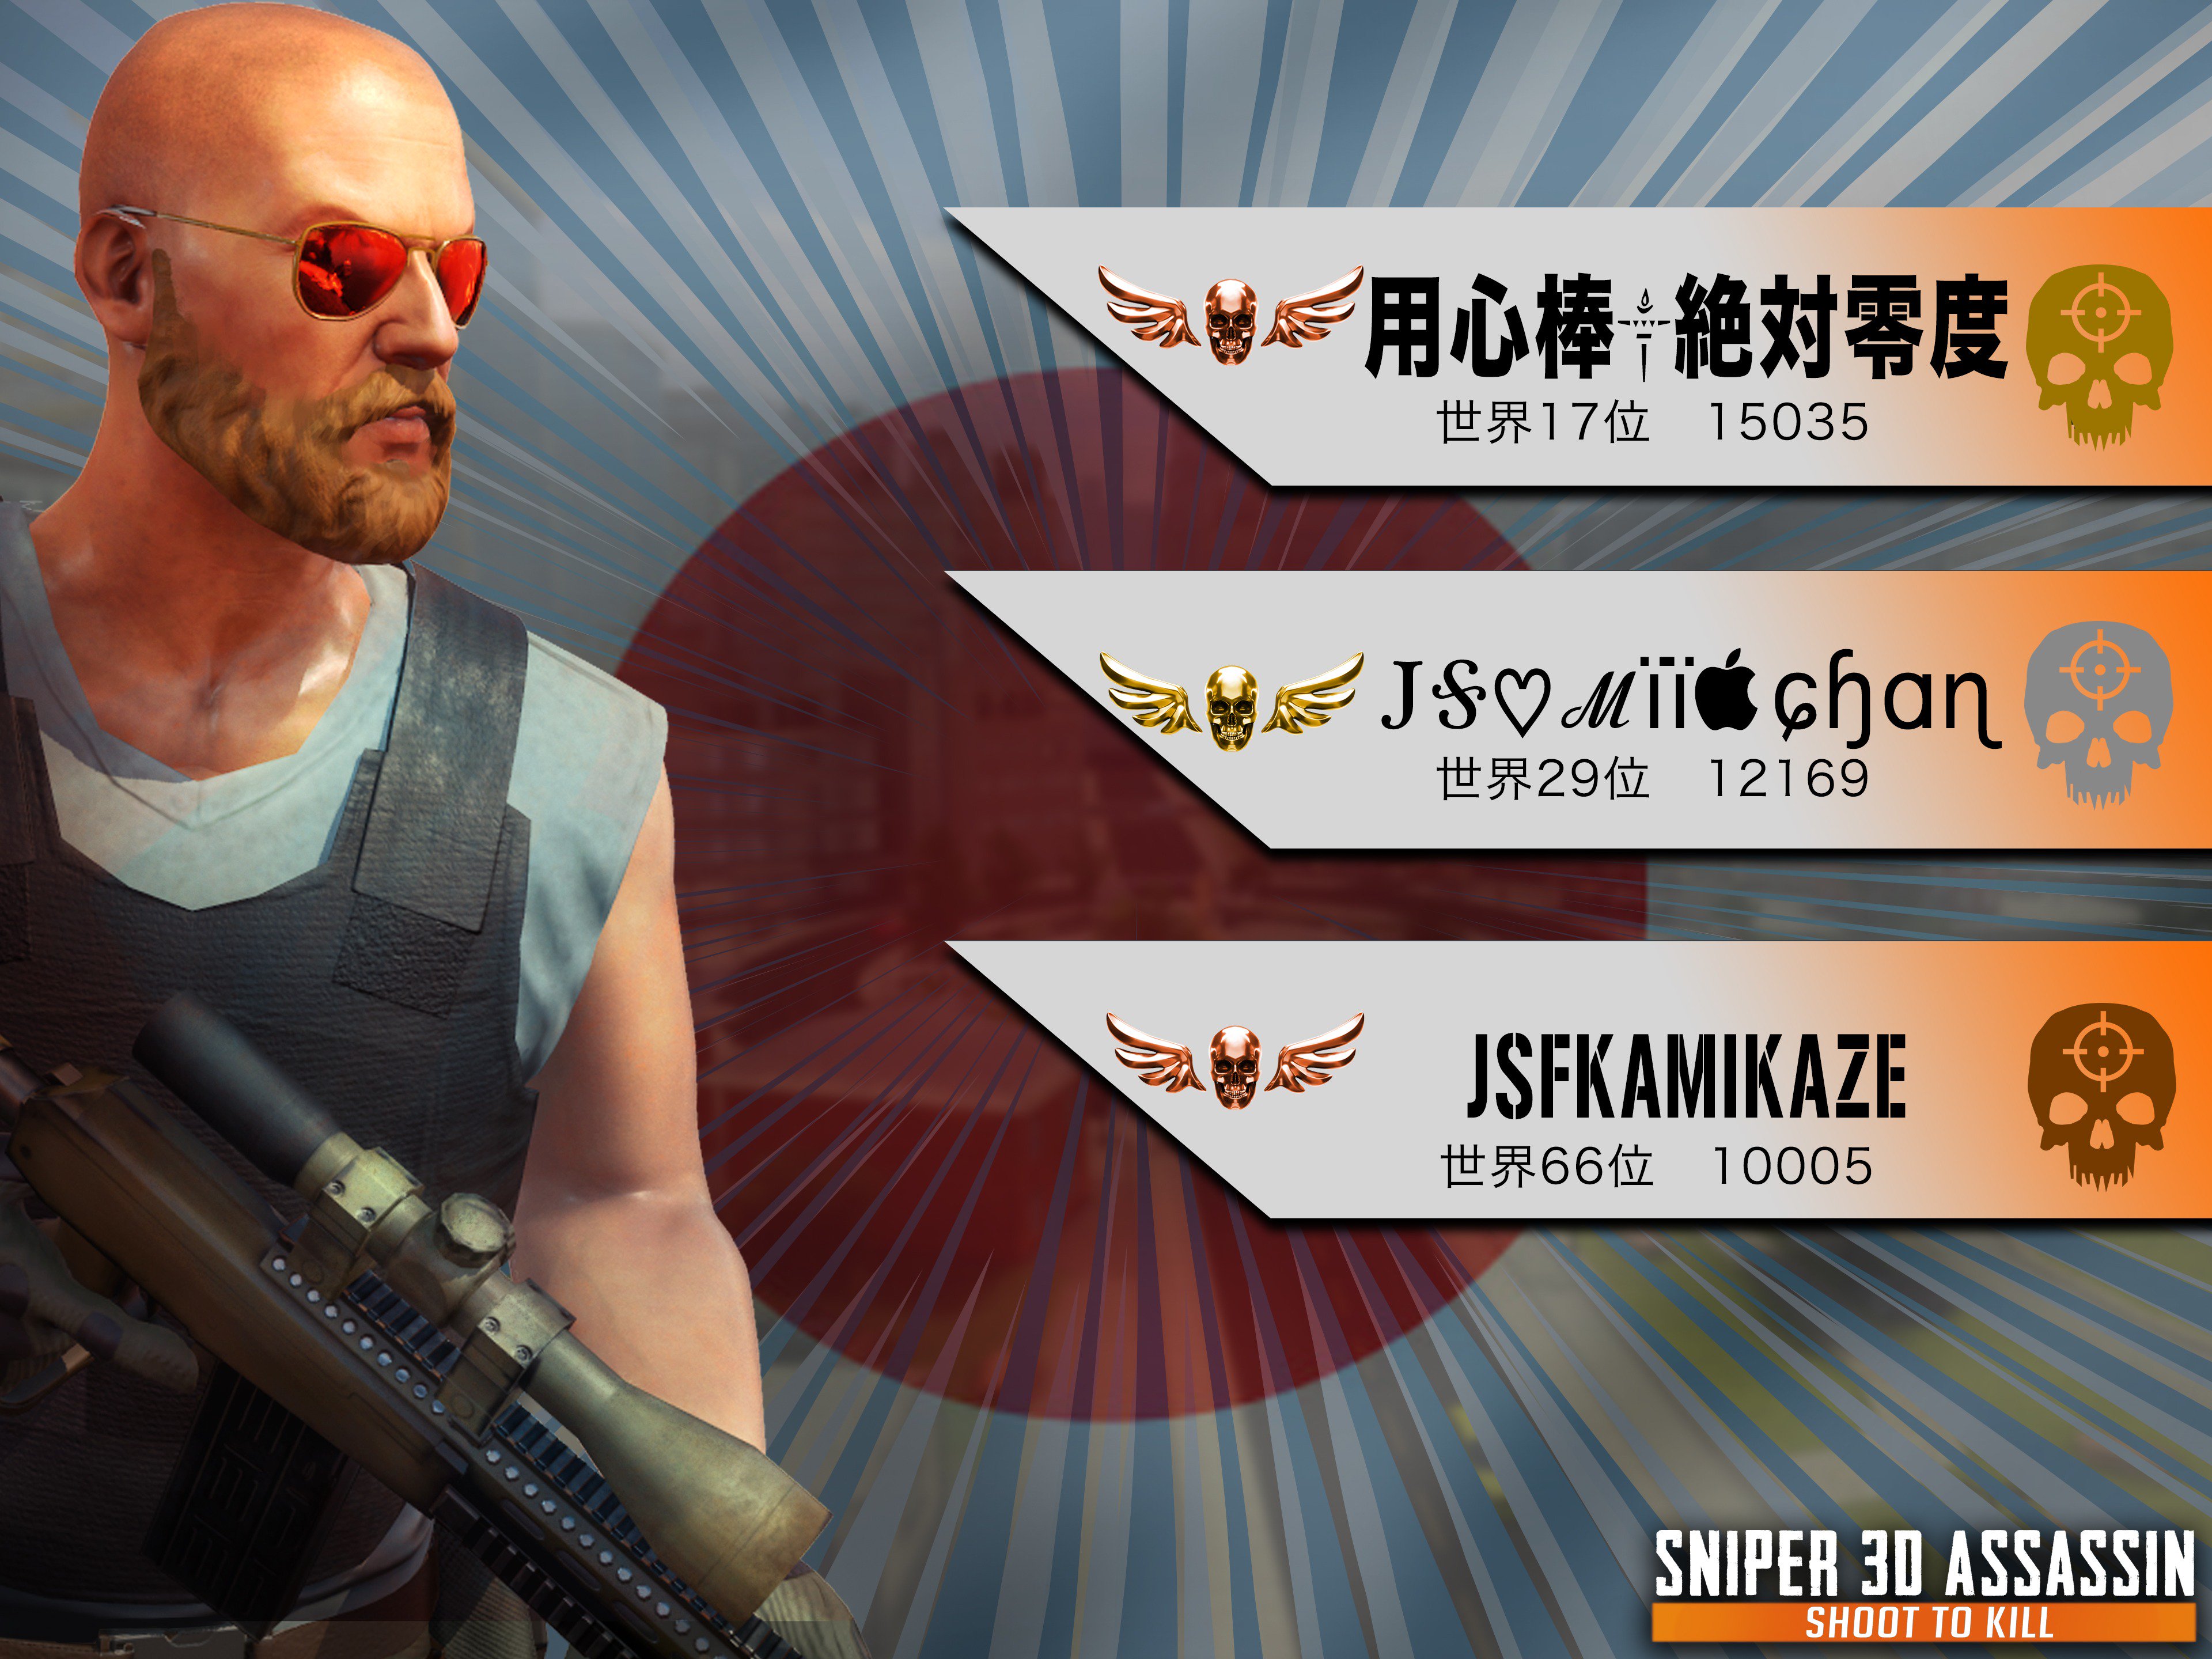 スナイパー3dアサシン公式 Sniper 3d Assassin Sniper3d Japan Twitter